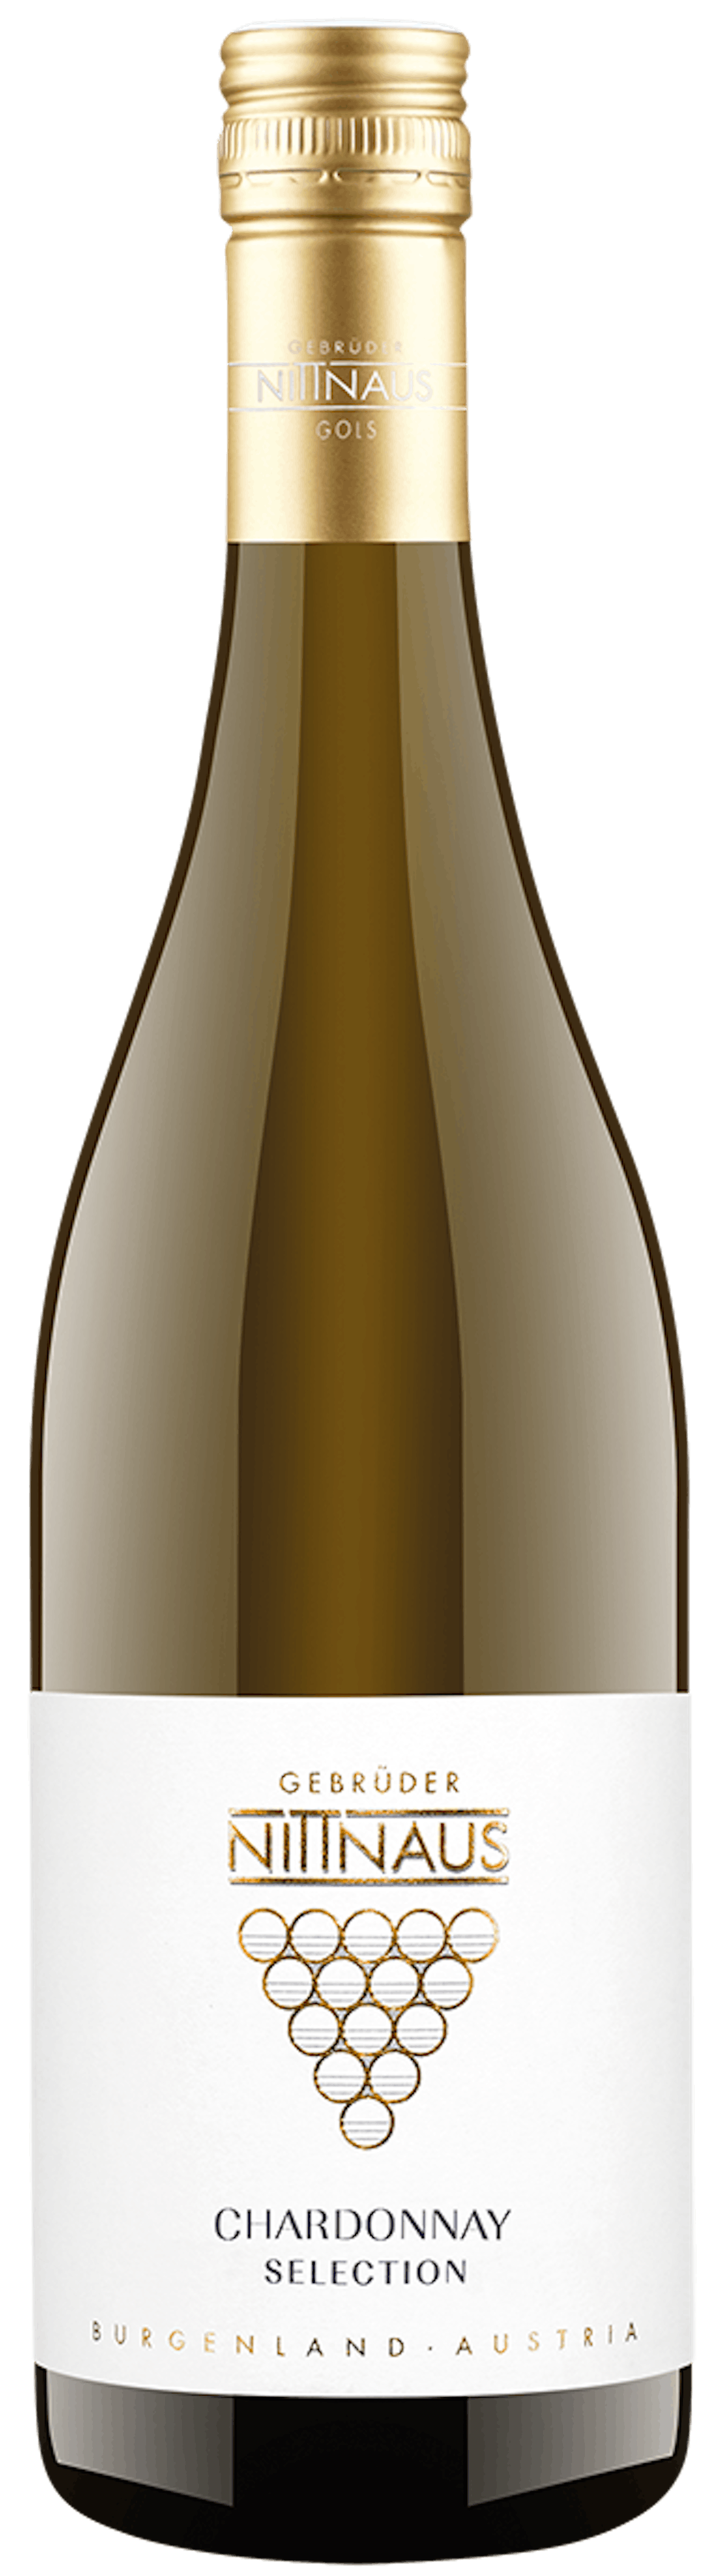 Chardonnay Selection